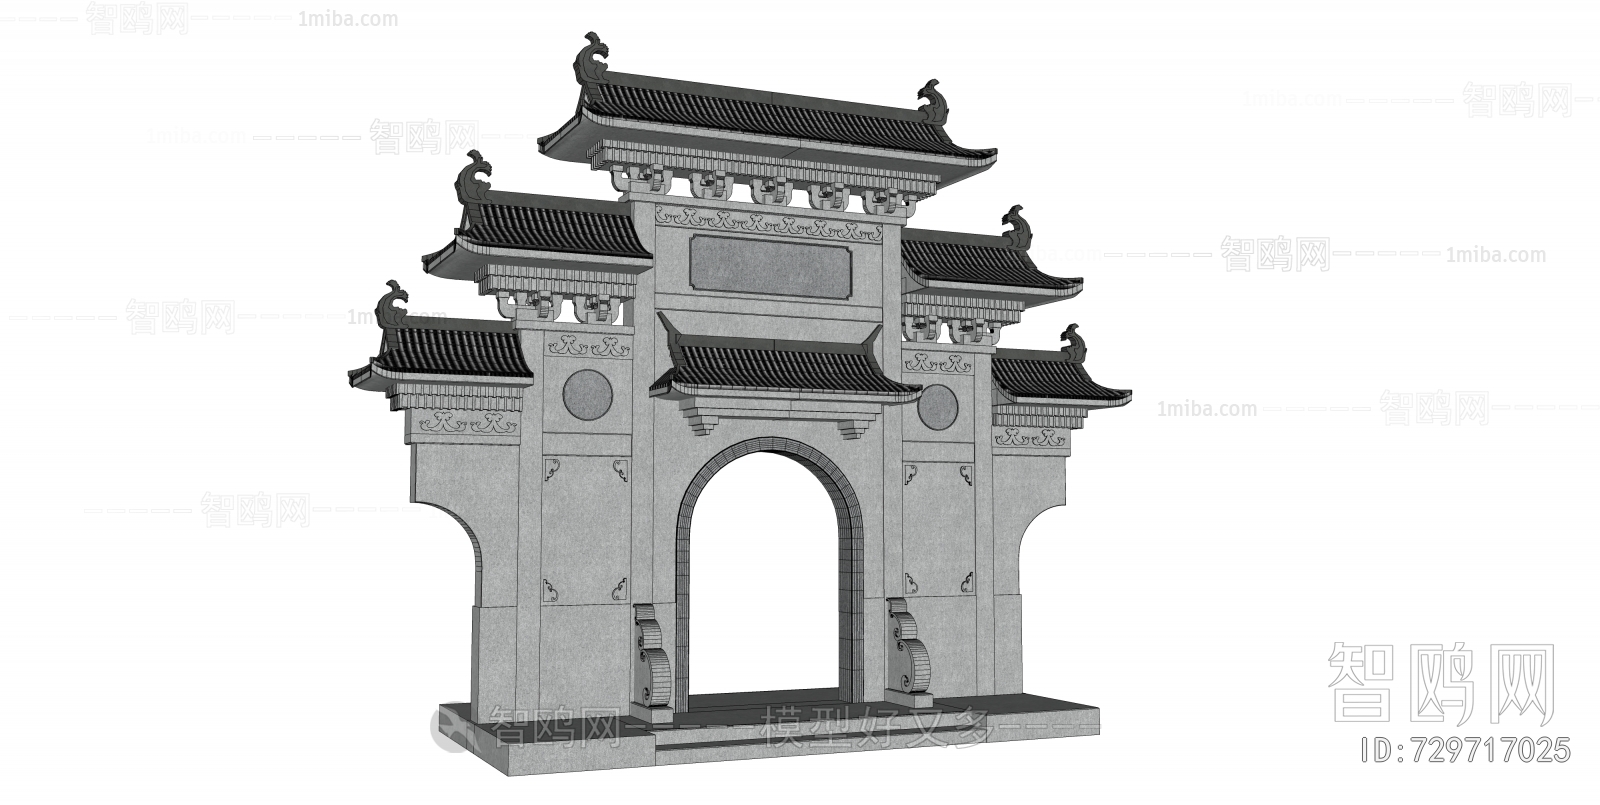 中式新中式牌坊景观大门